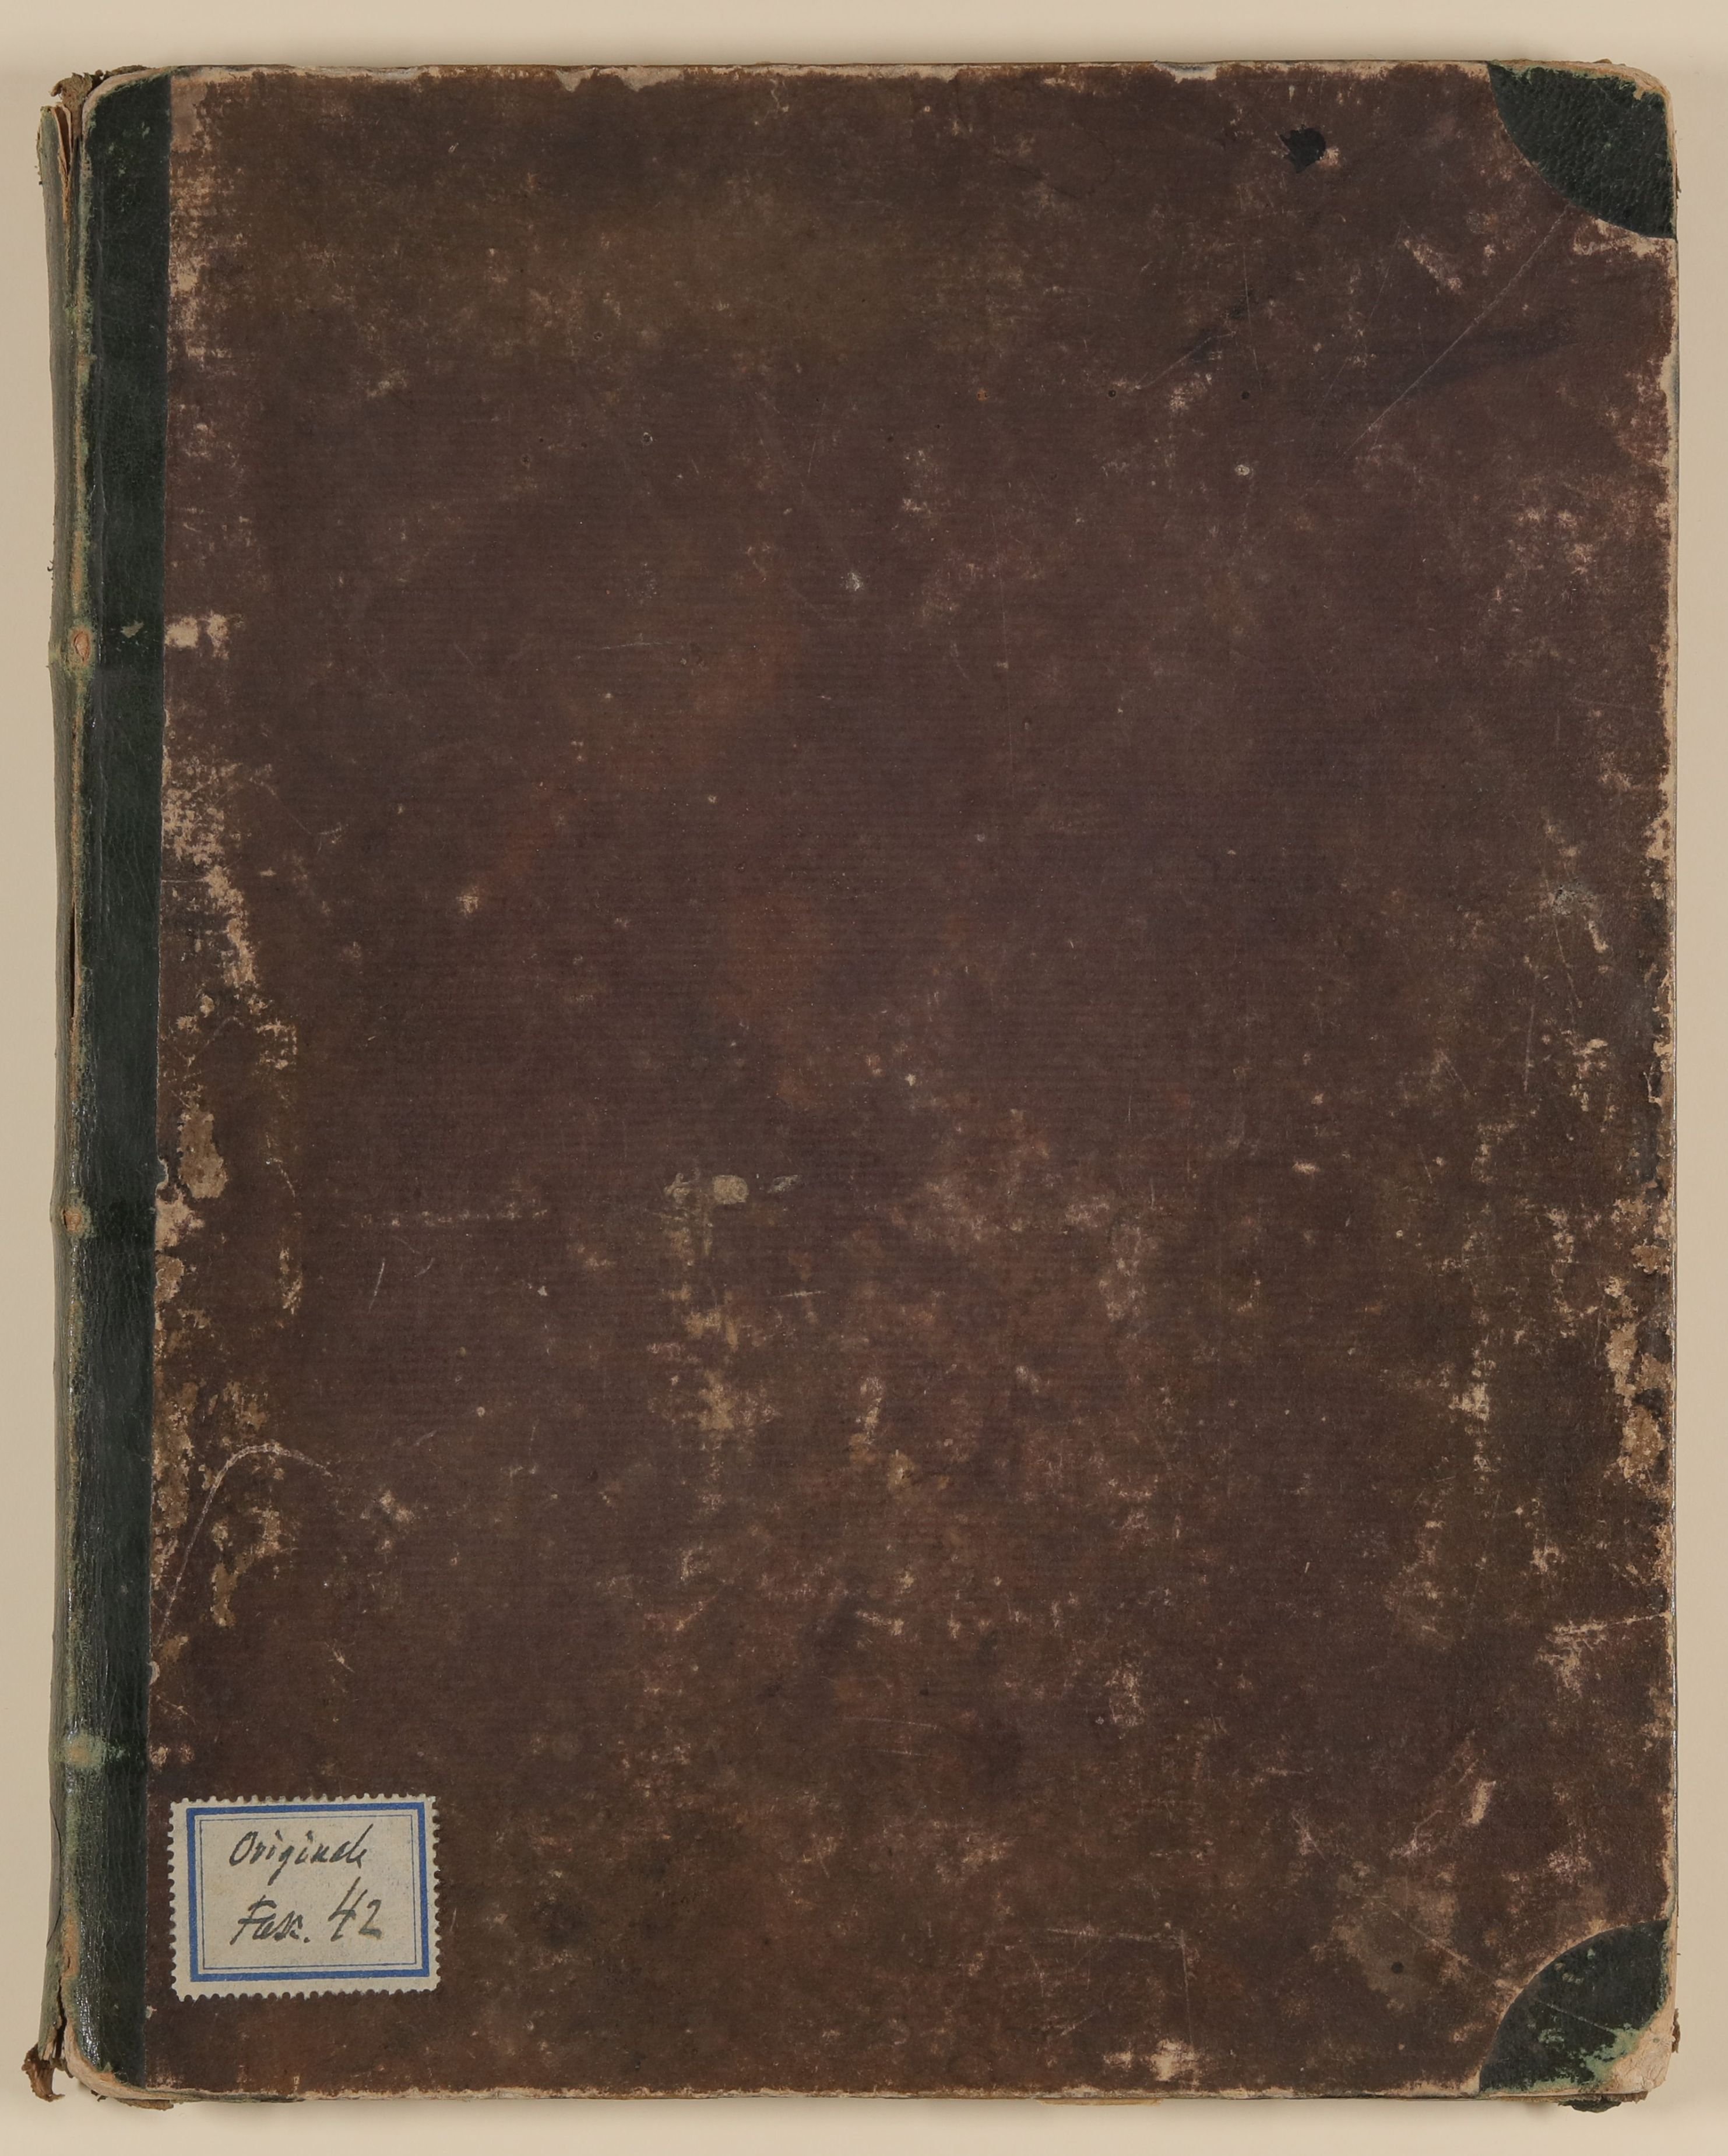 Skizzenbuch von unbekannter Hand, evtl. des Louis Thomassin, Einband vorne (Freies Deutsches Hochstift / Frankfurter Goethe-Museum CC BY-NC-SA)